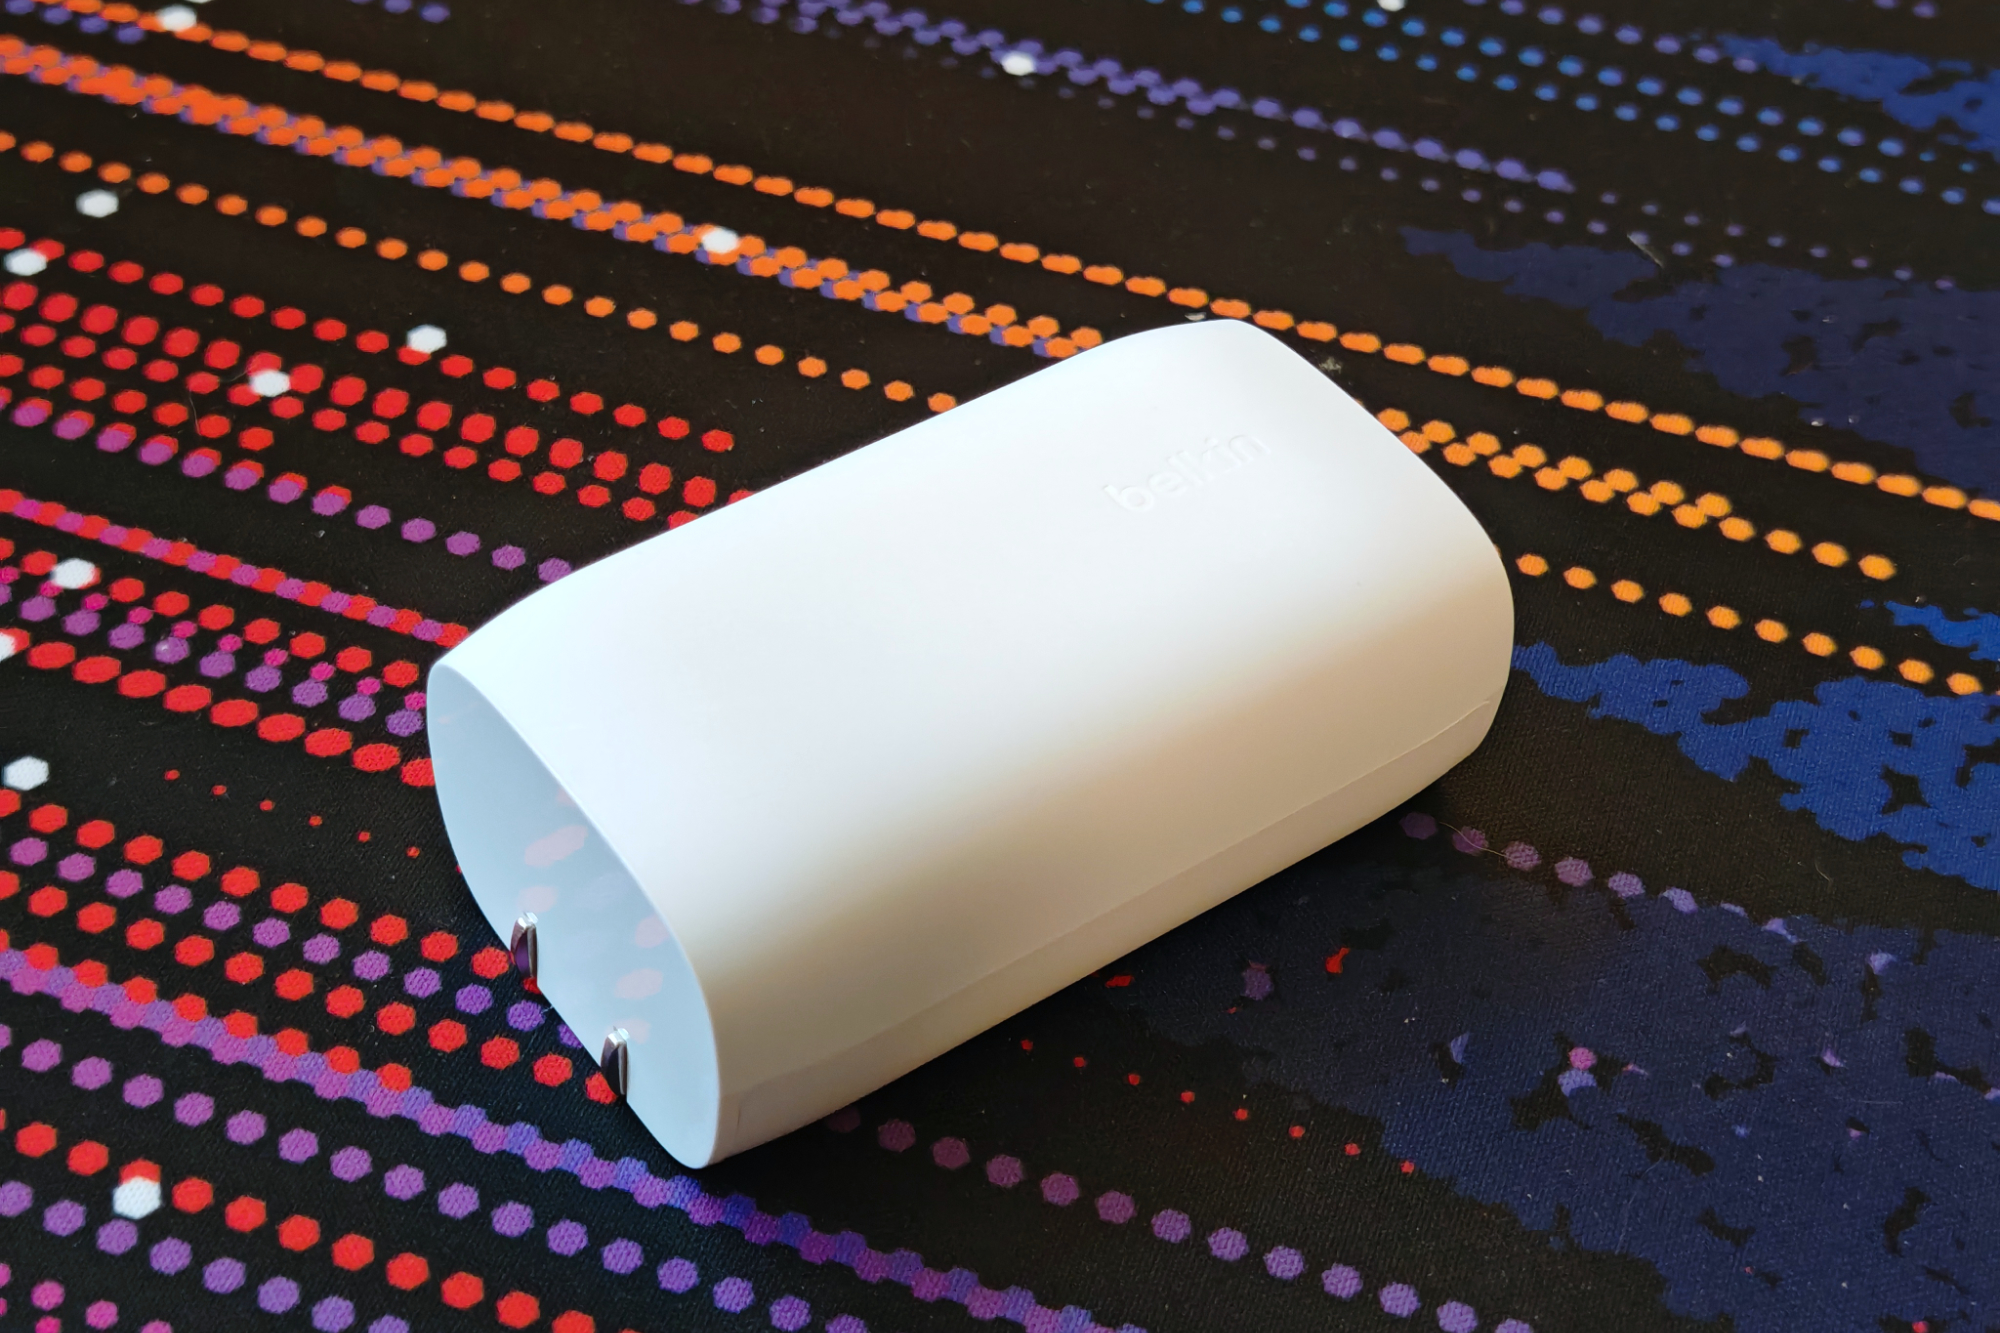 रंगीन डेस्क मैट पर एक सफेद बेल्किन चार्जर रखा हुआ है।